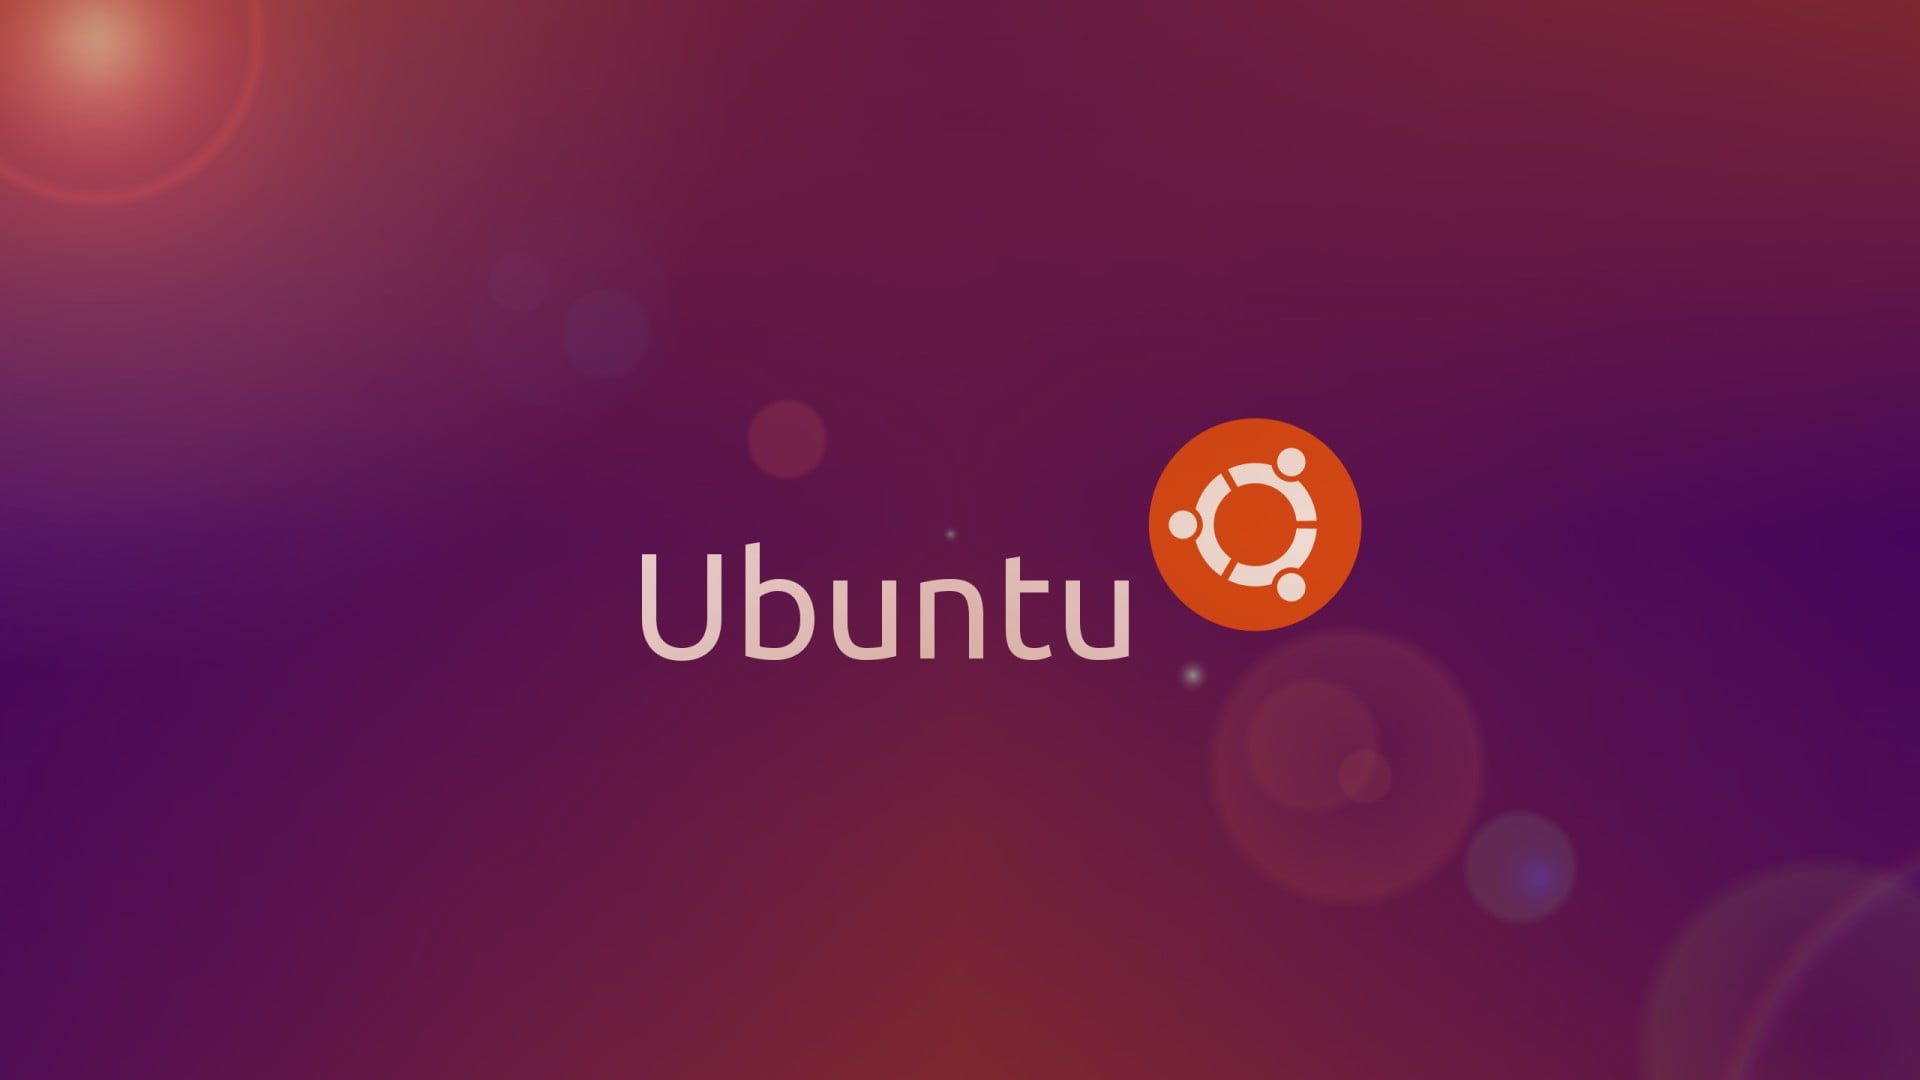 ubuntu meaning